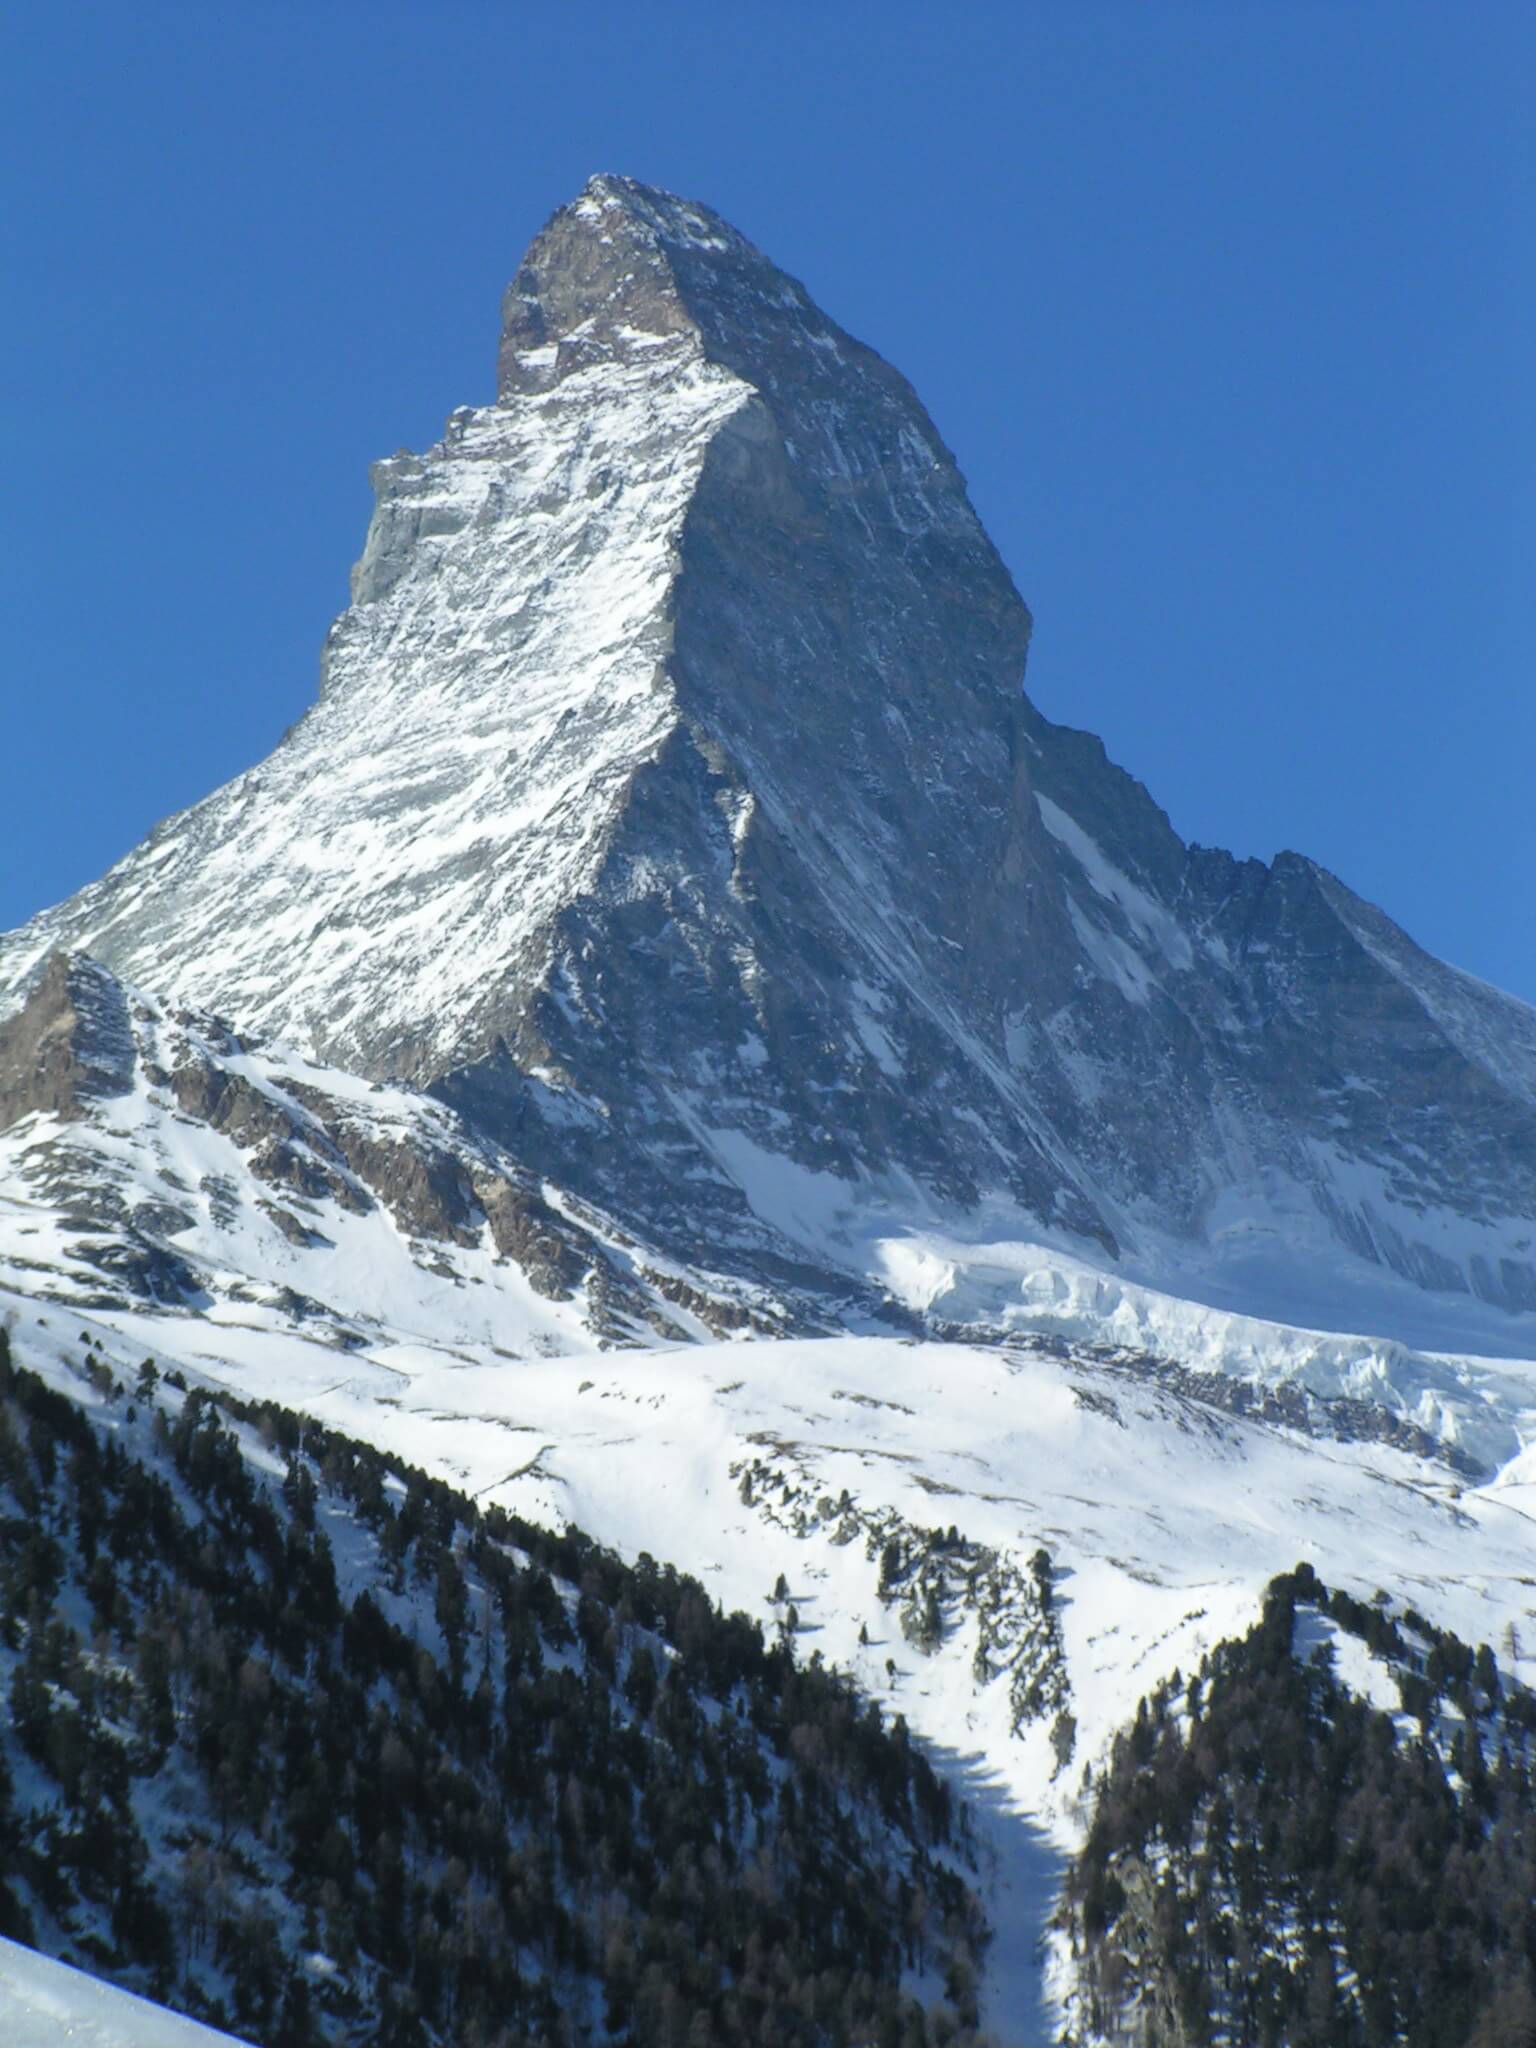 The summit of the Matterhorn as seen from the settlement of Zermatt. From Wikipedia